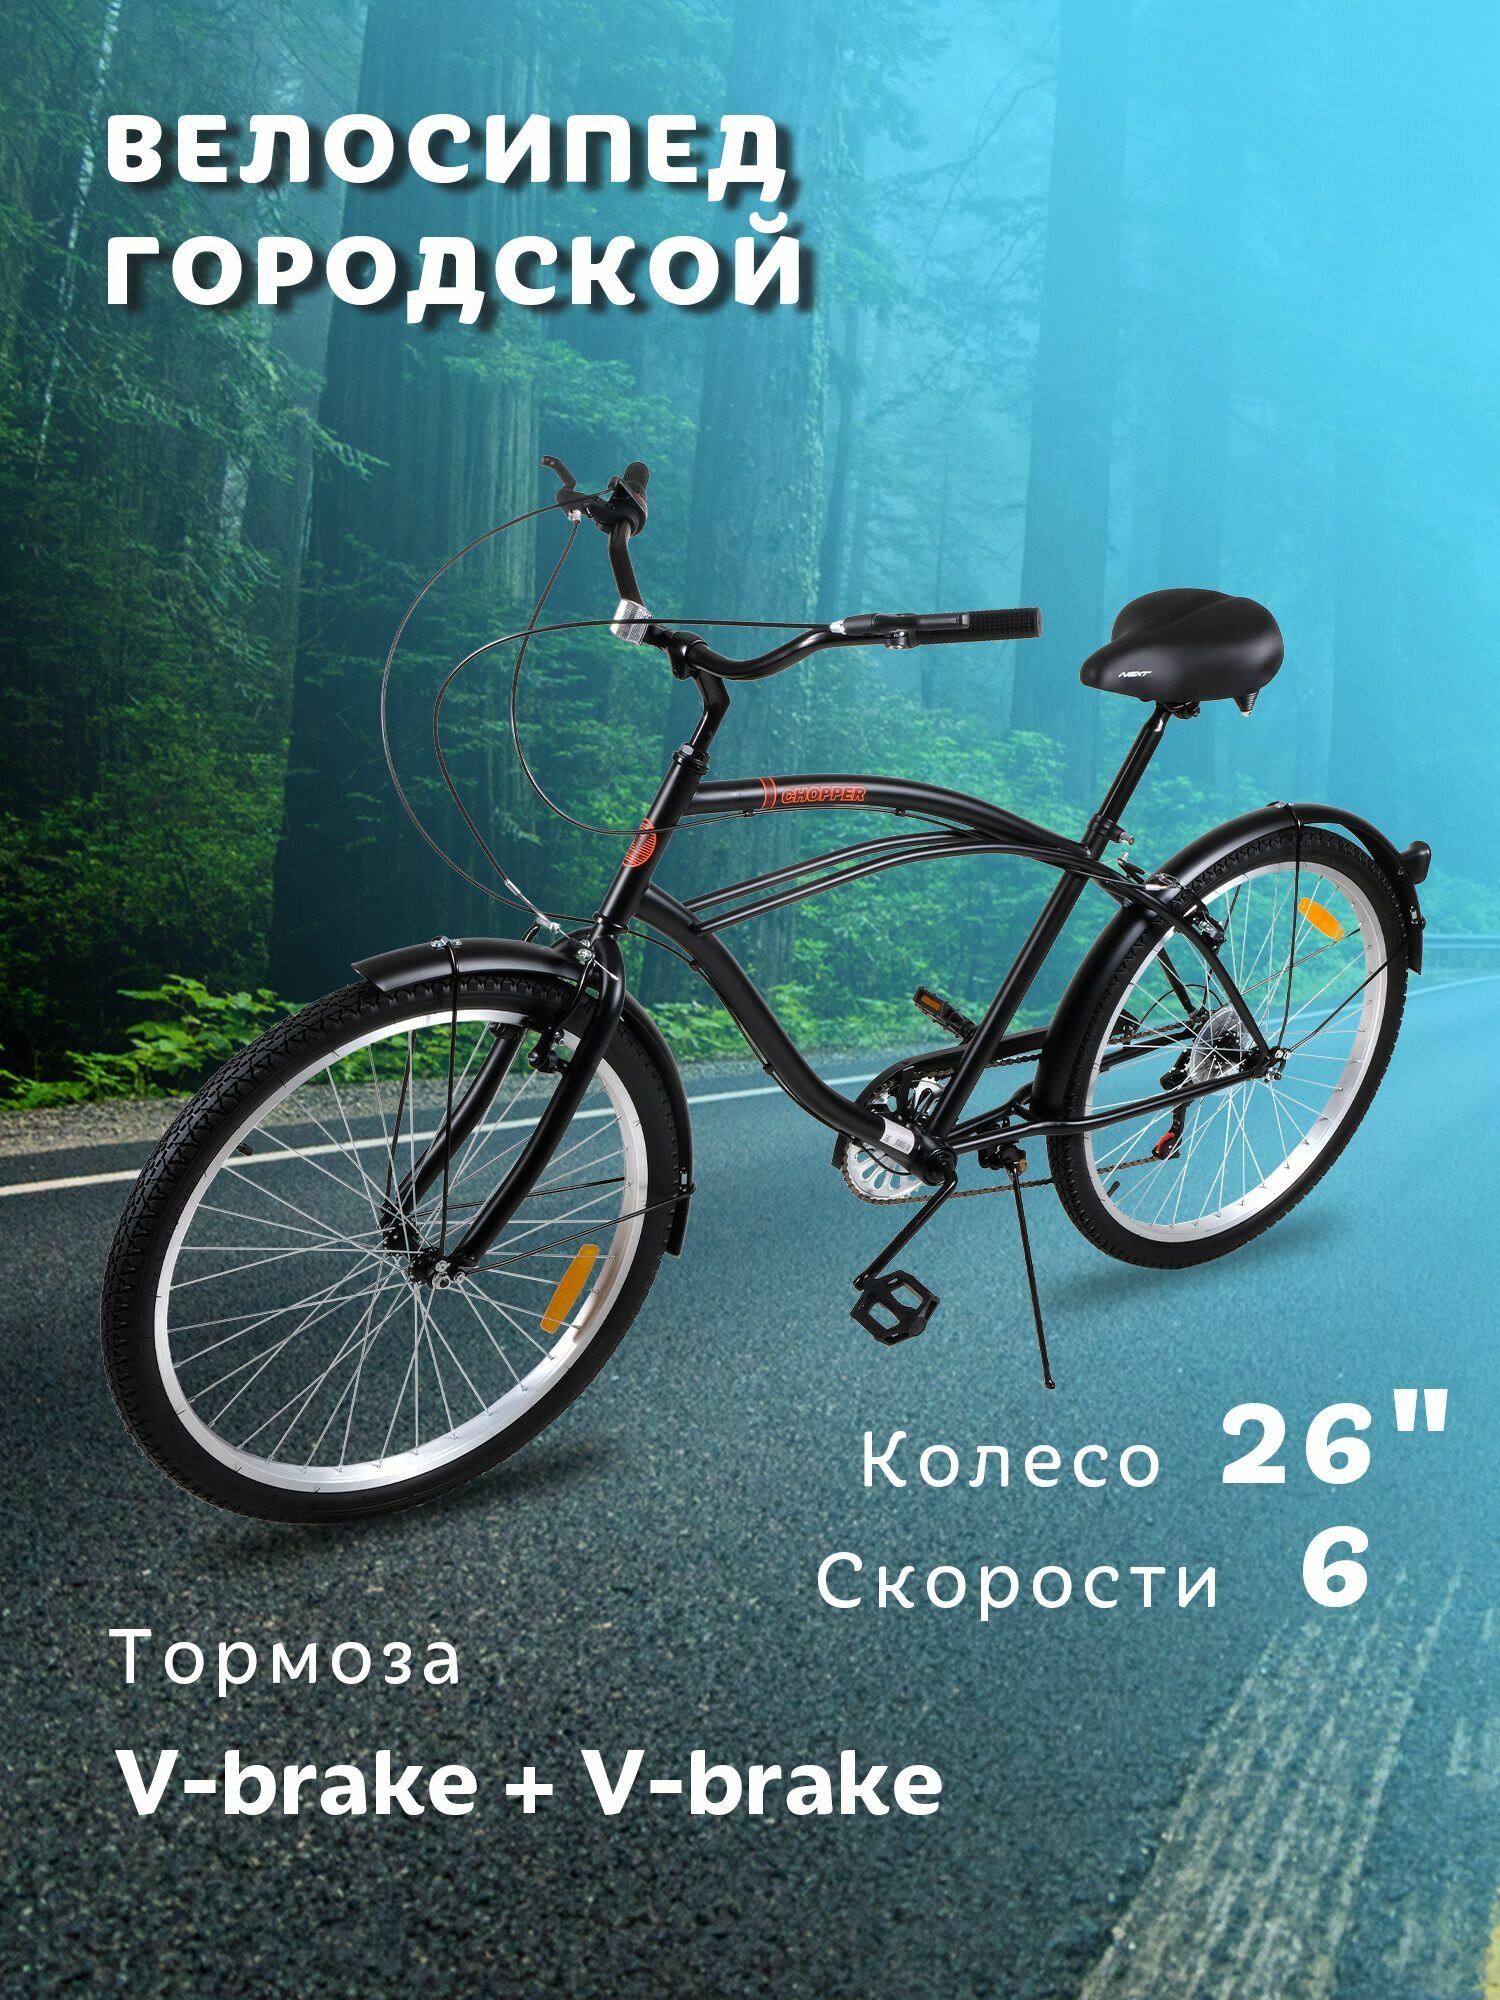 Велосипед городской NEXTbike CHOPPER 26"